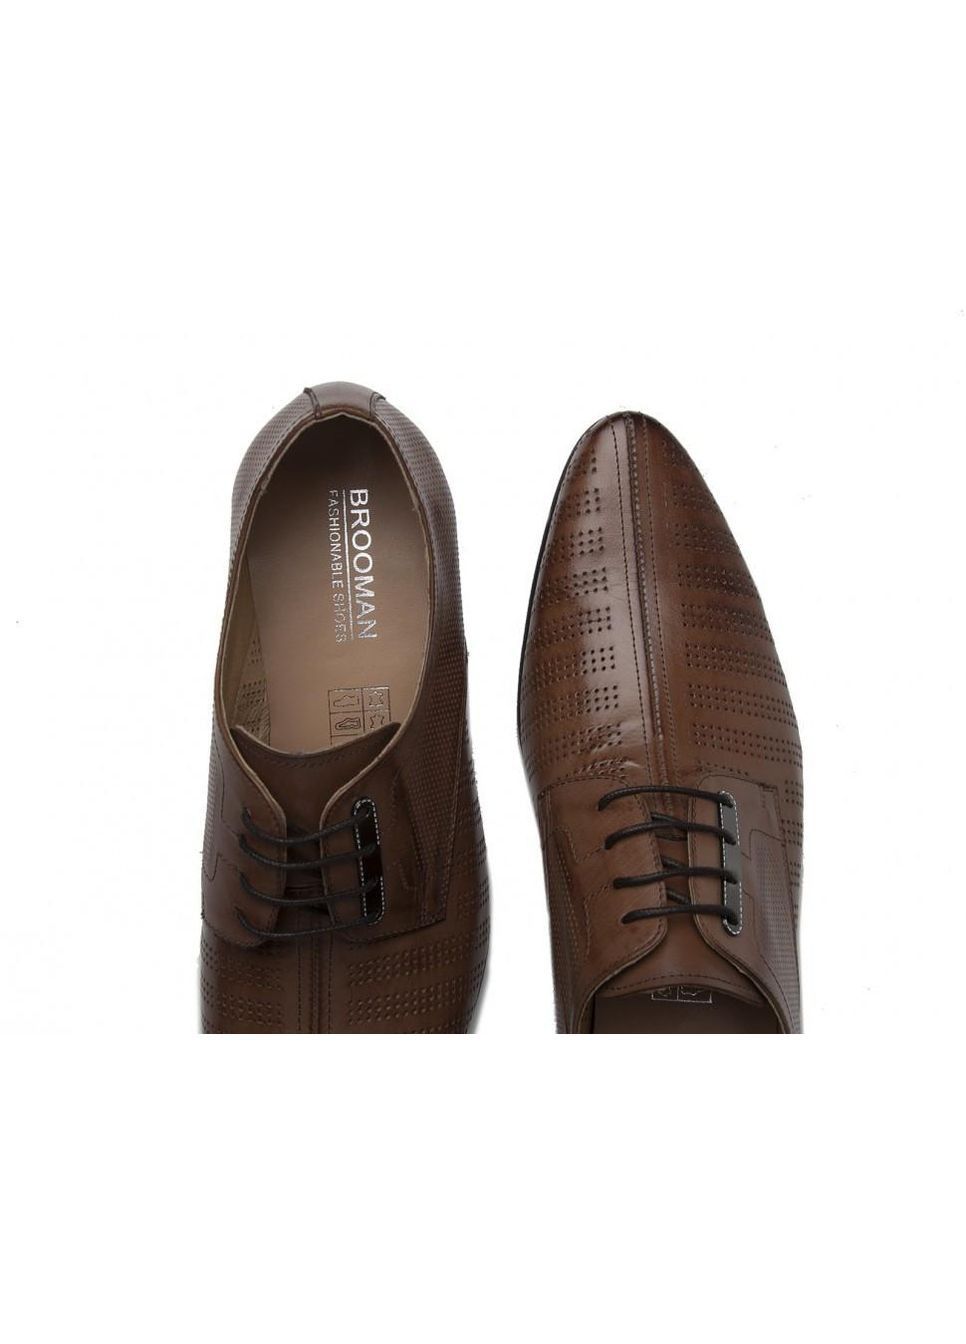 Коричневые туфли 7142126 38 цвет коричневый Brooman